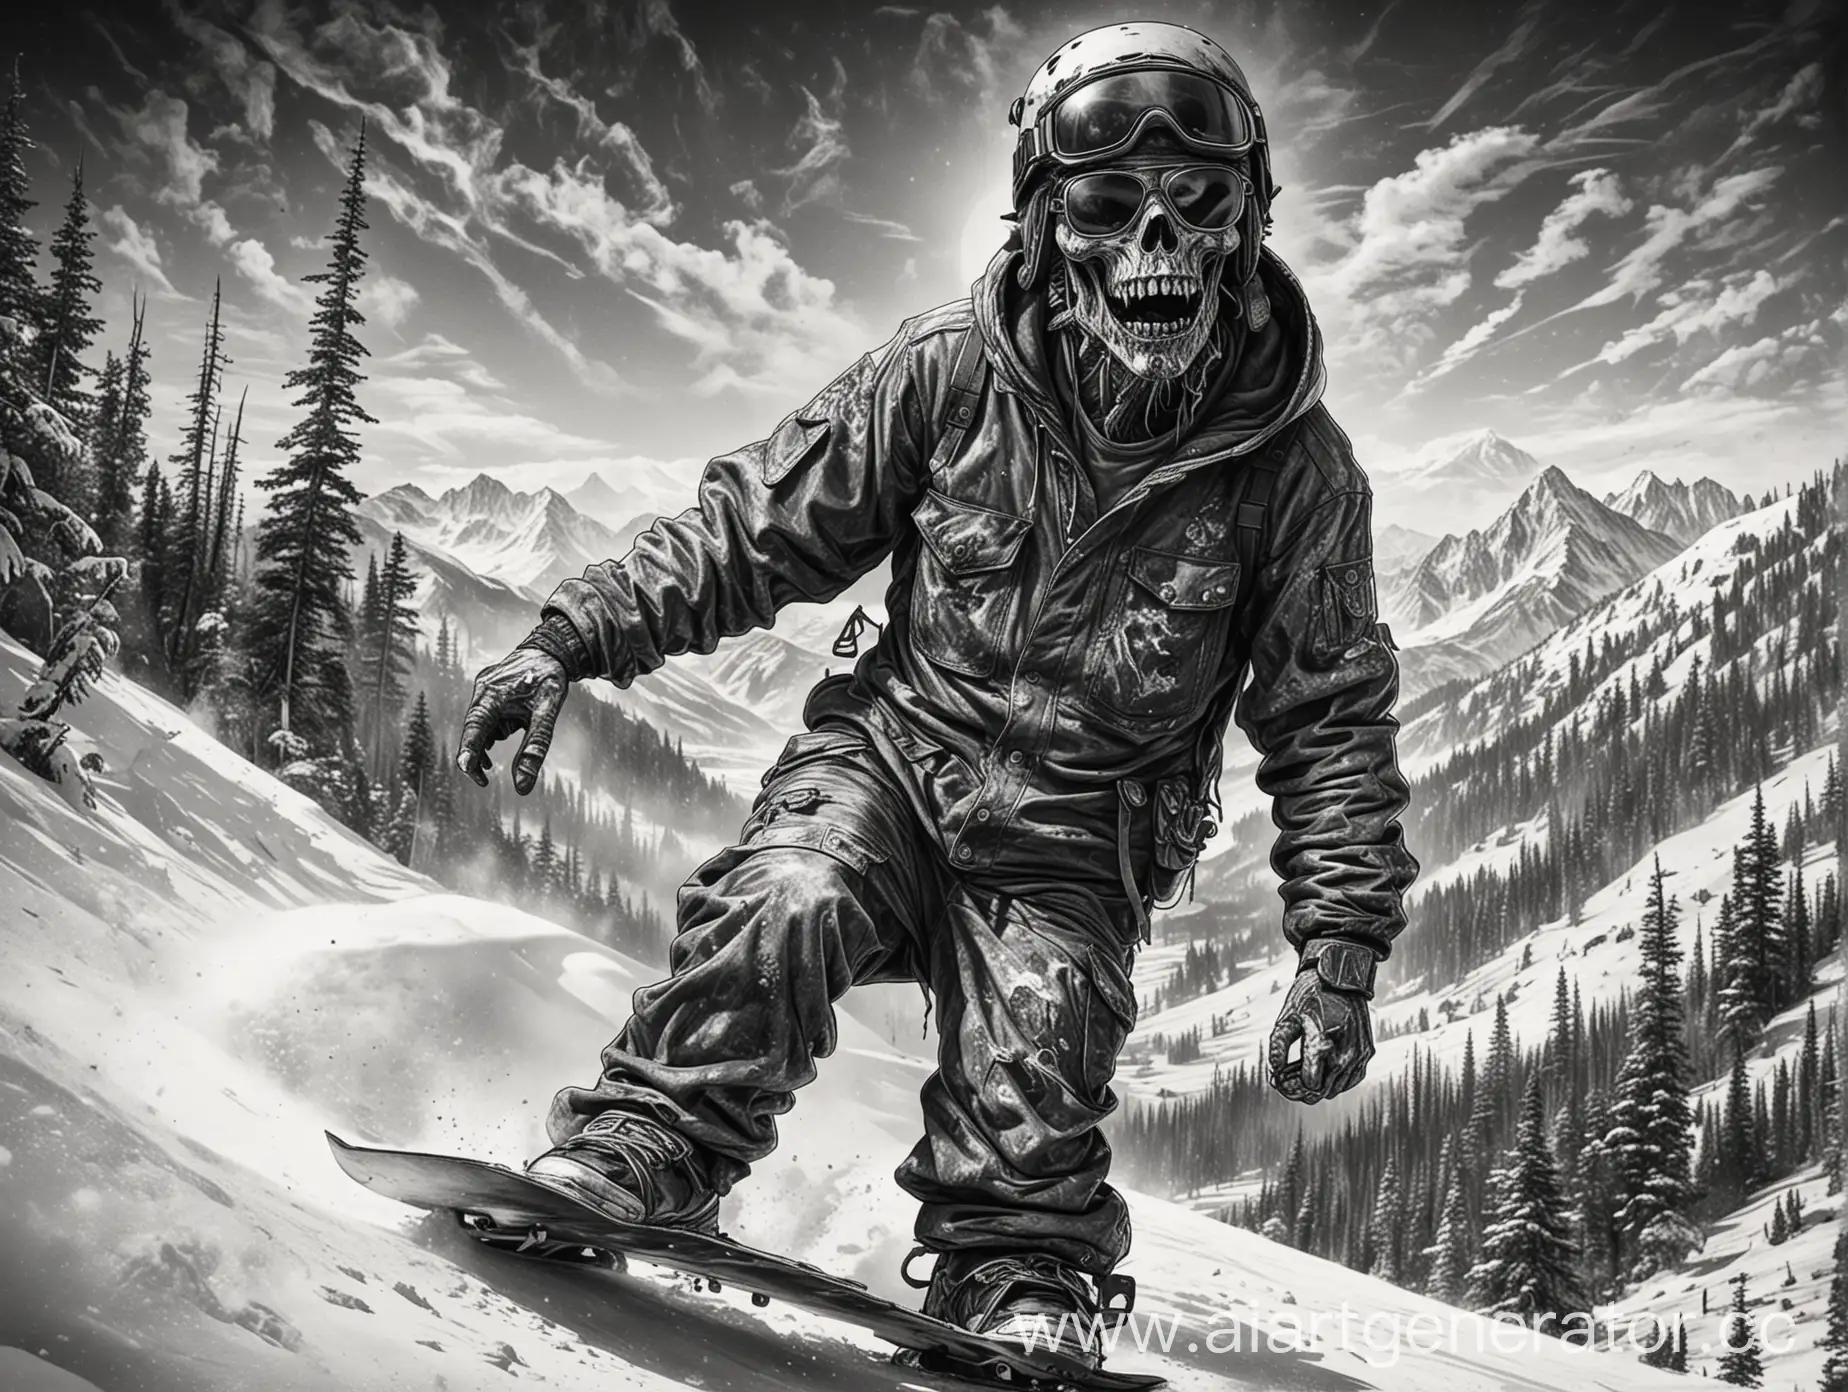 Undead-Zombie-Snowboarder-Stylish-Monochrome-Sketch